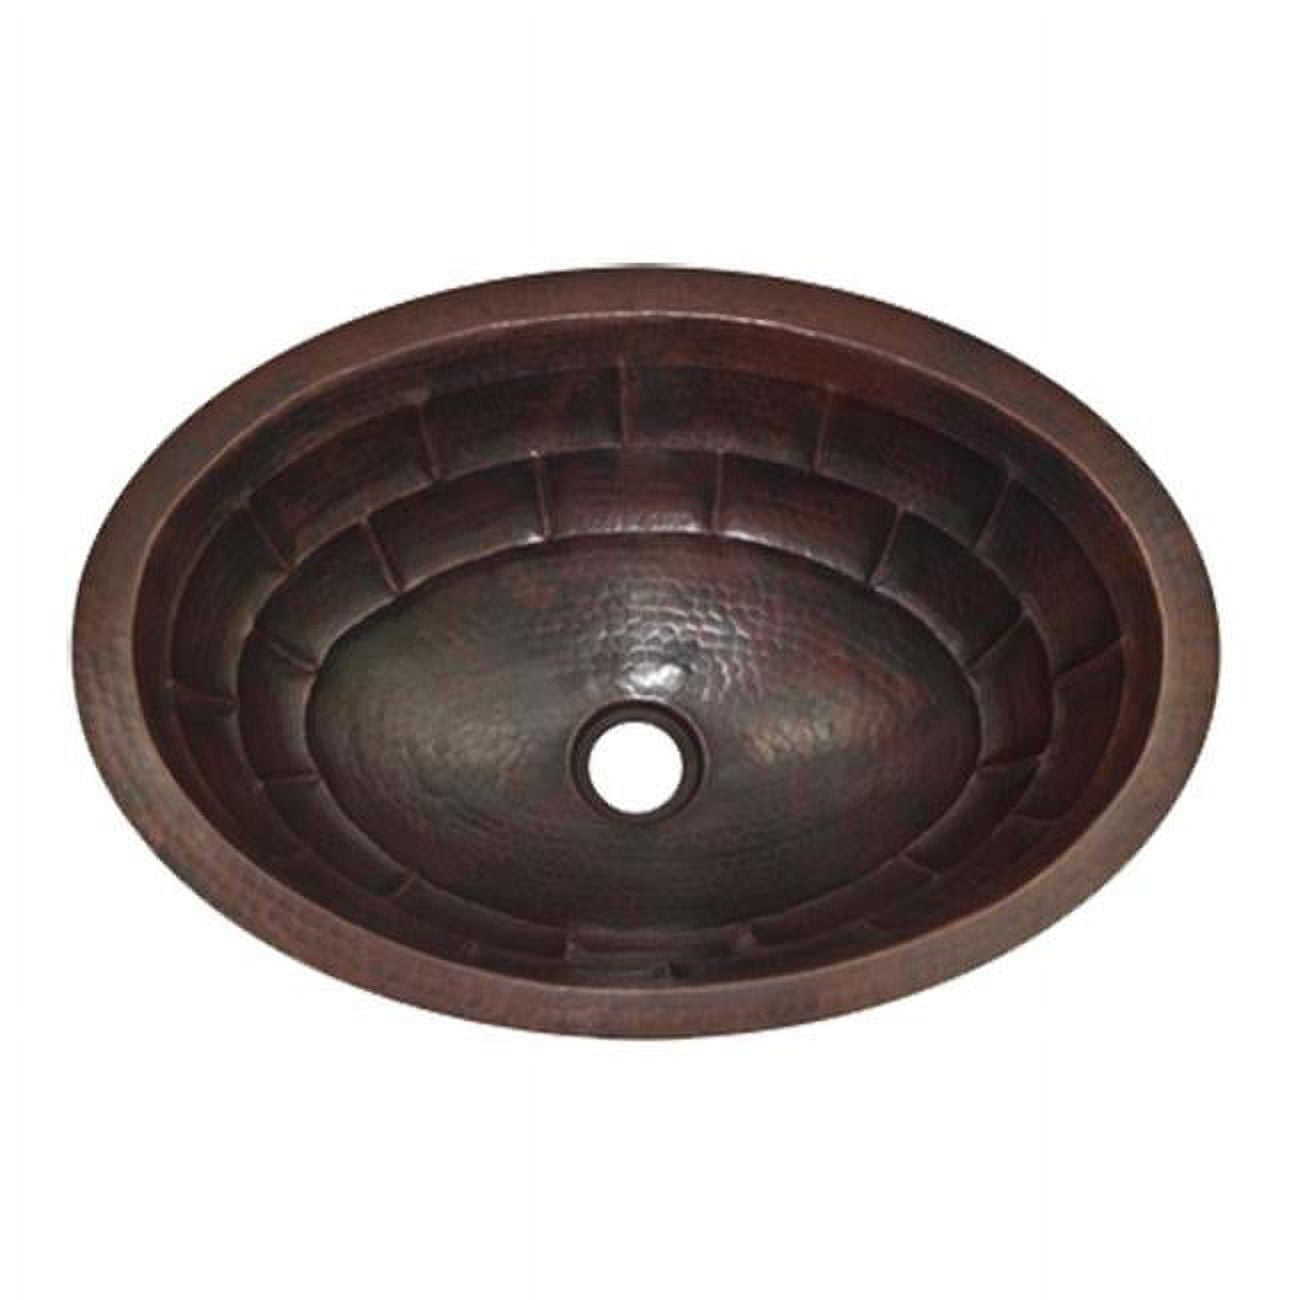 Cos-ts-19-rl-db Copper Oval Bath Sink, Dark Brown - Turtle Shell Design - 6 X 14 X 19 In.